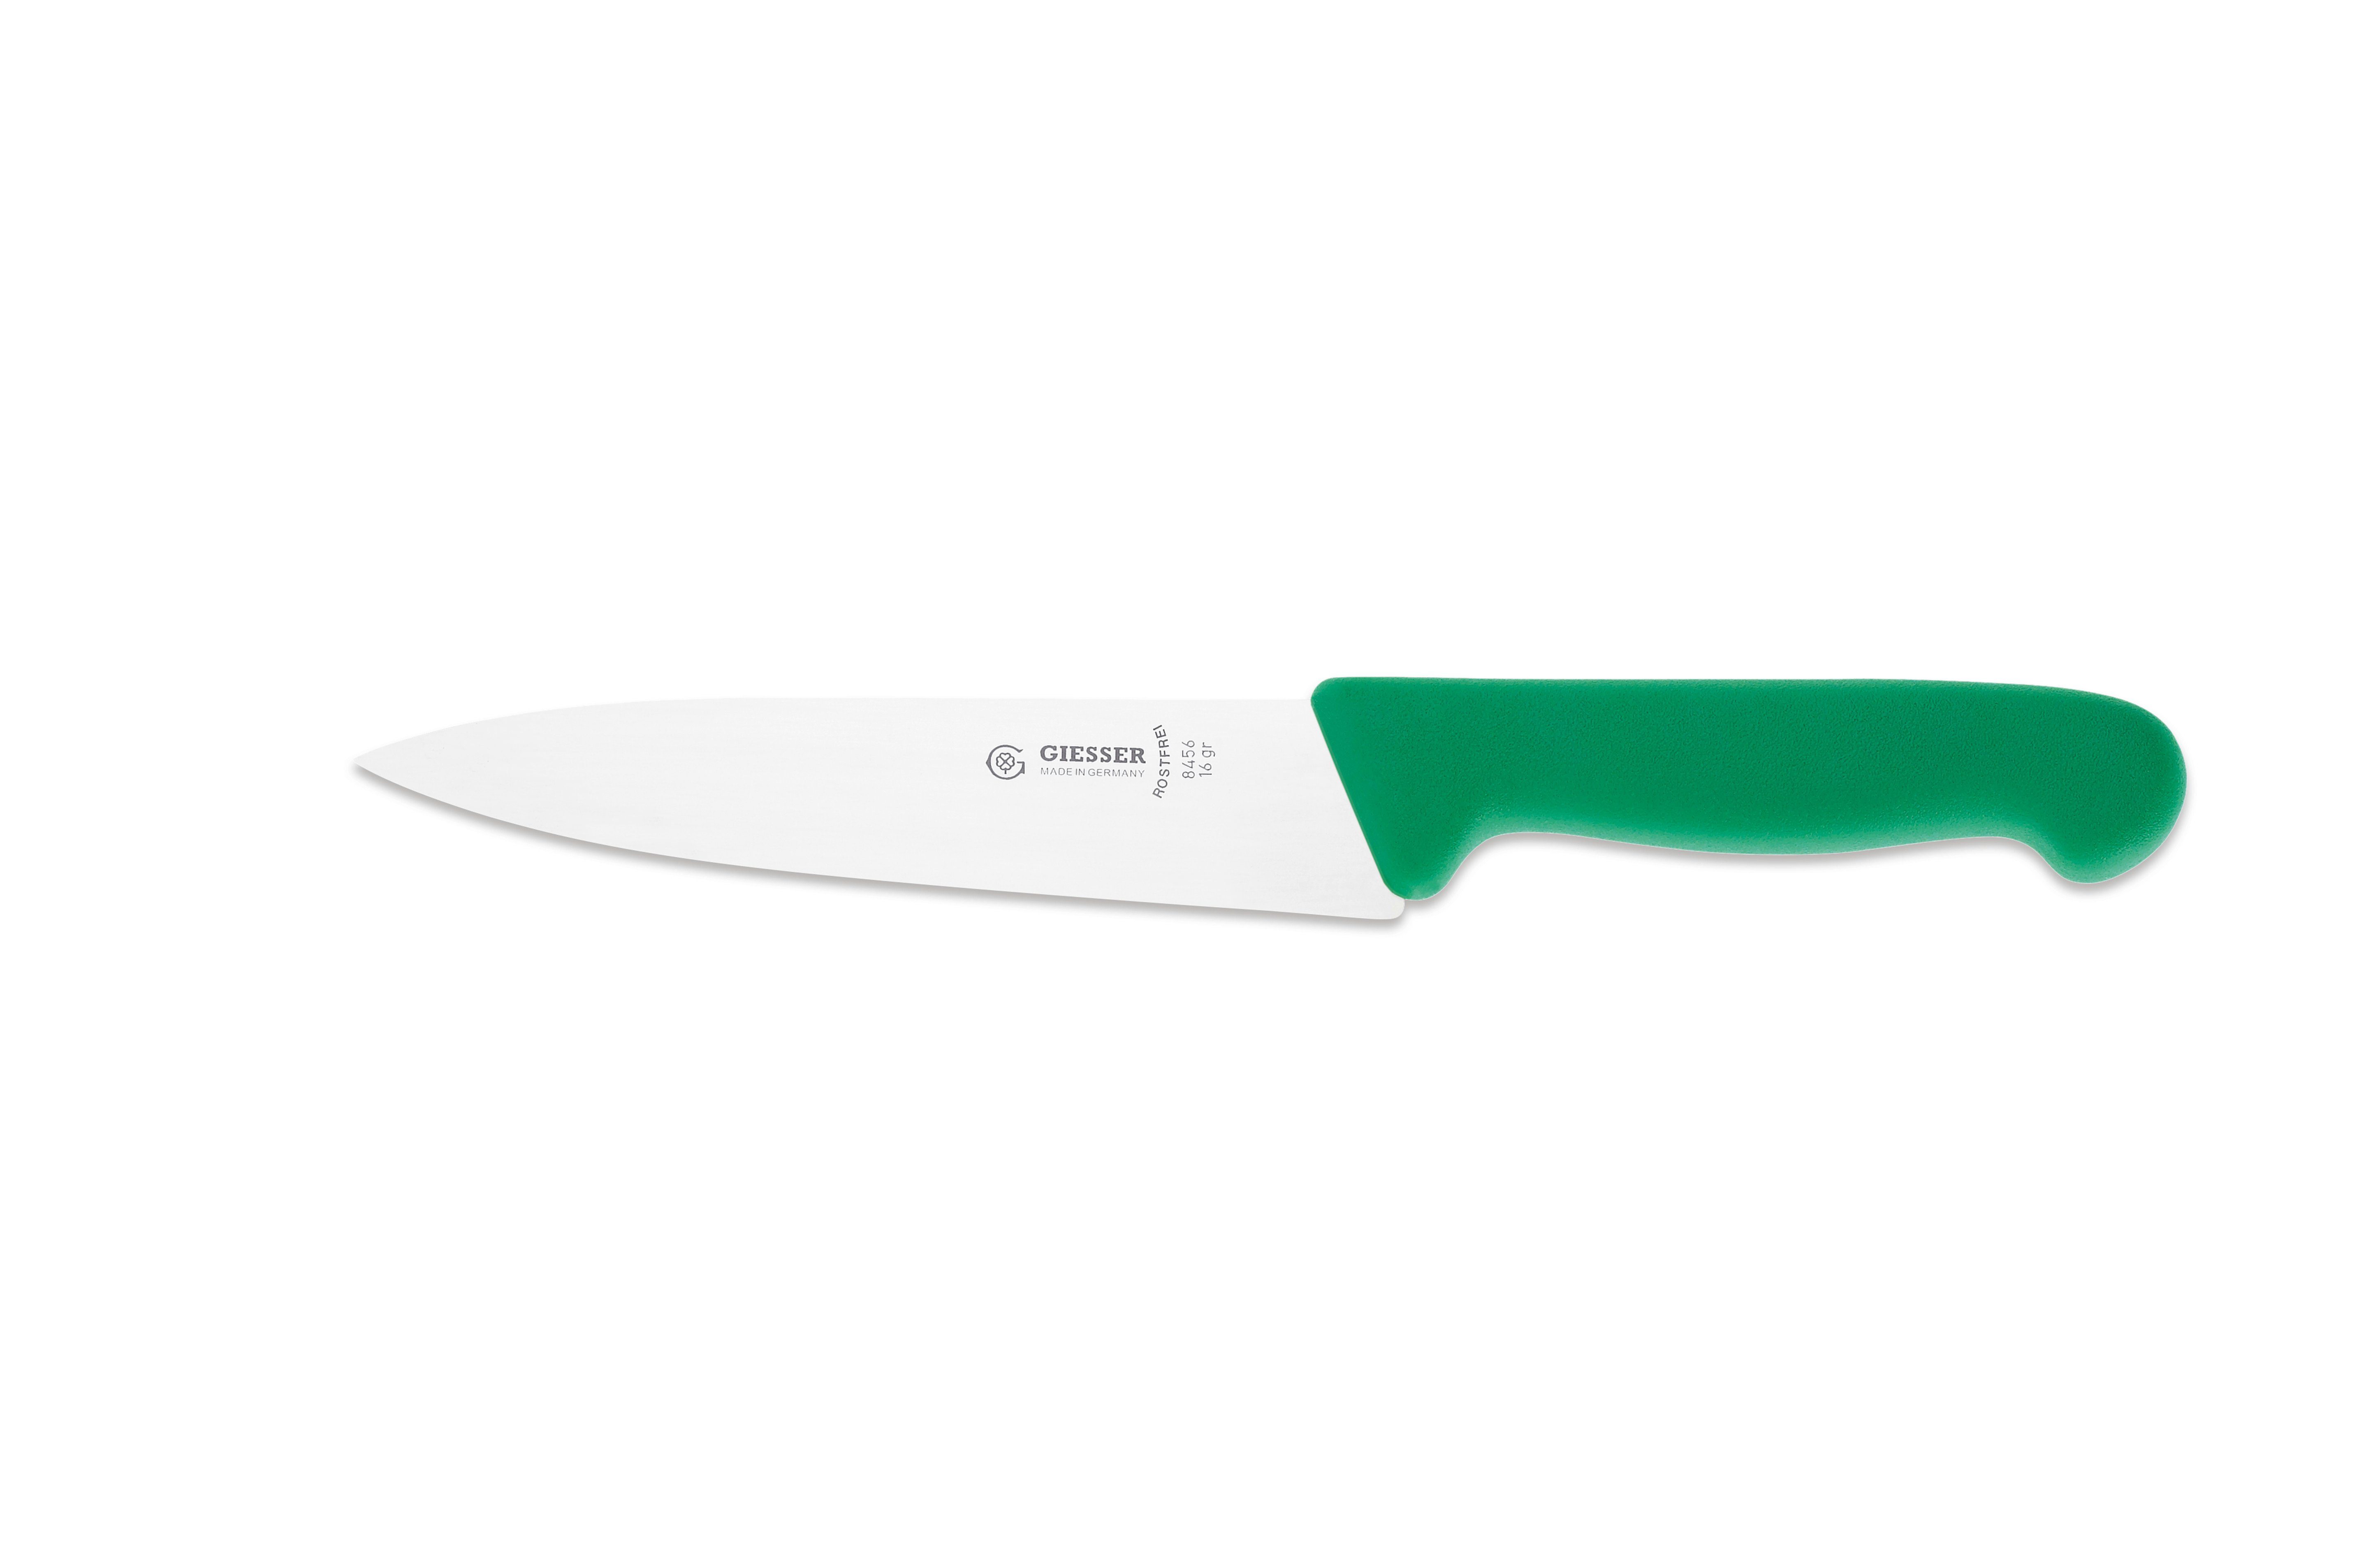 Giesser Messer Kochmesser Küchenmesser 8456, schmale, mittelspitze Klinge, scharf Handabzug, Ideal für jede Küche grün